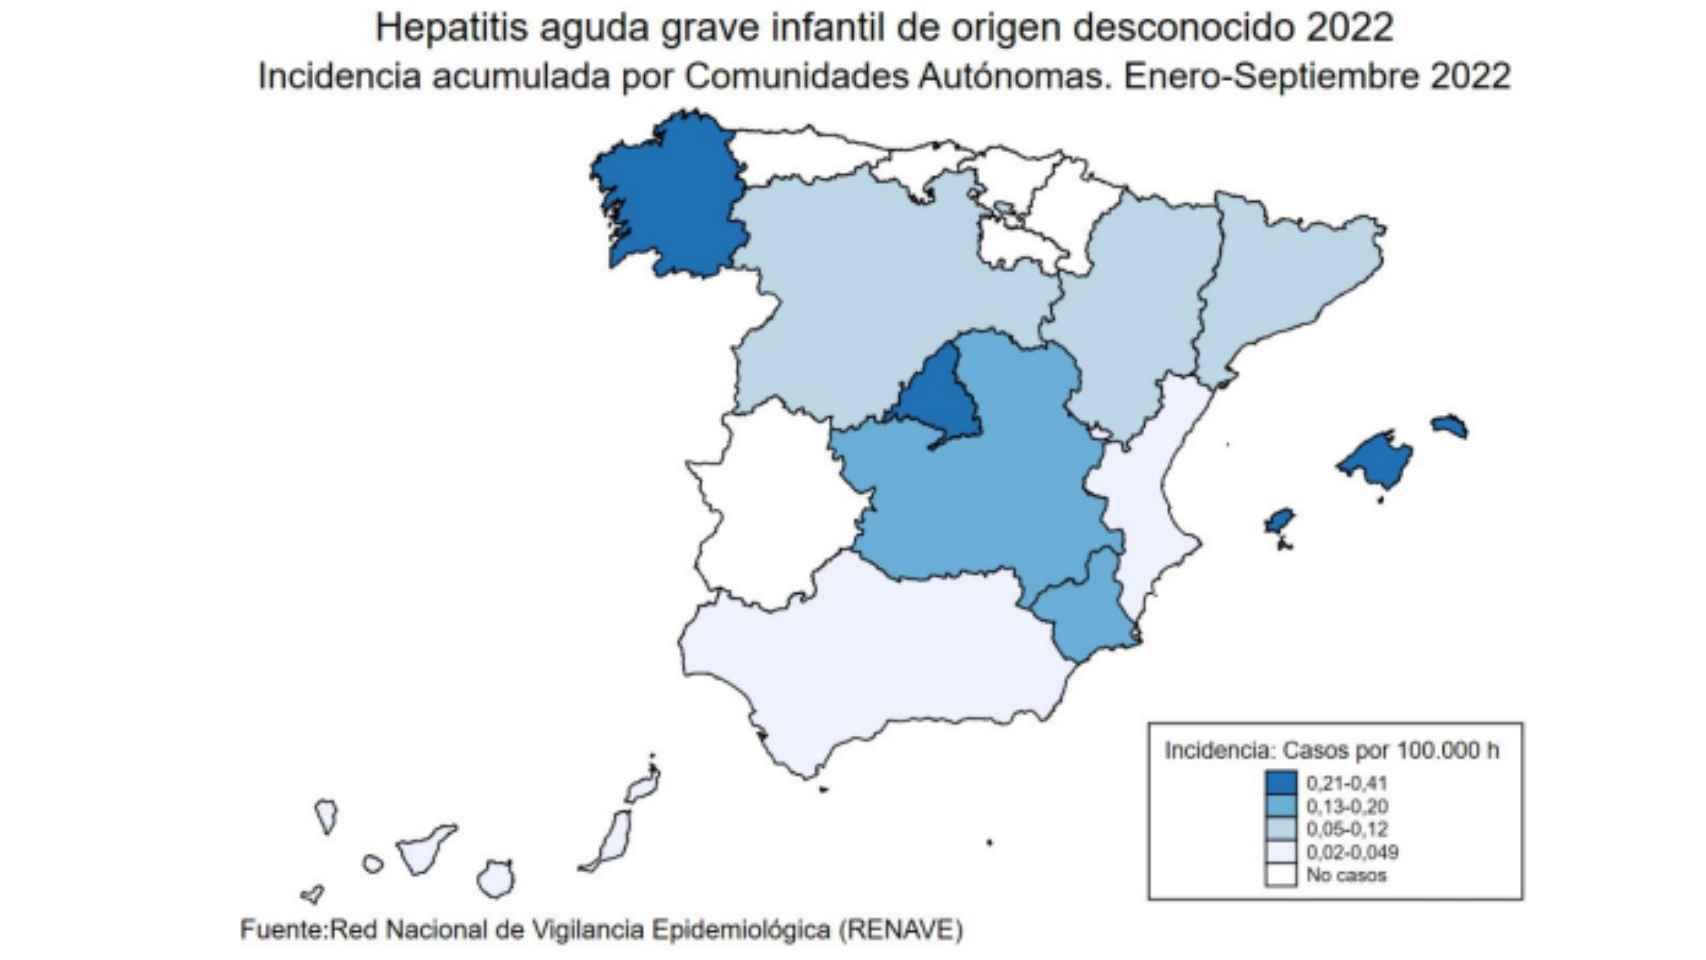 Incidencia acumulada de hepatitis grave de causa desconocida en 2022 por Comunidades Autónomas entre el 1 de enero y el 3 de octubre de 2022